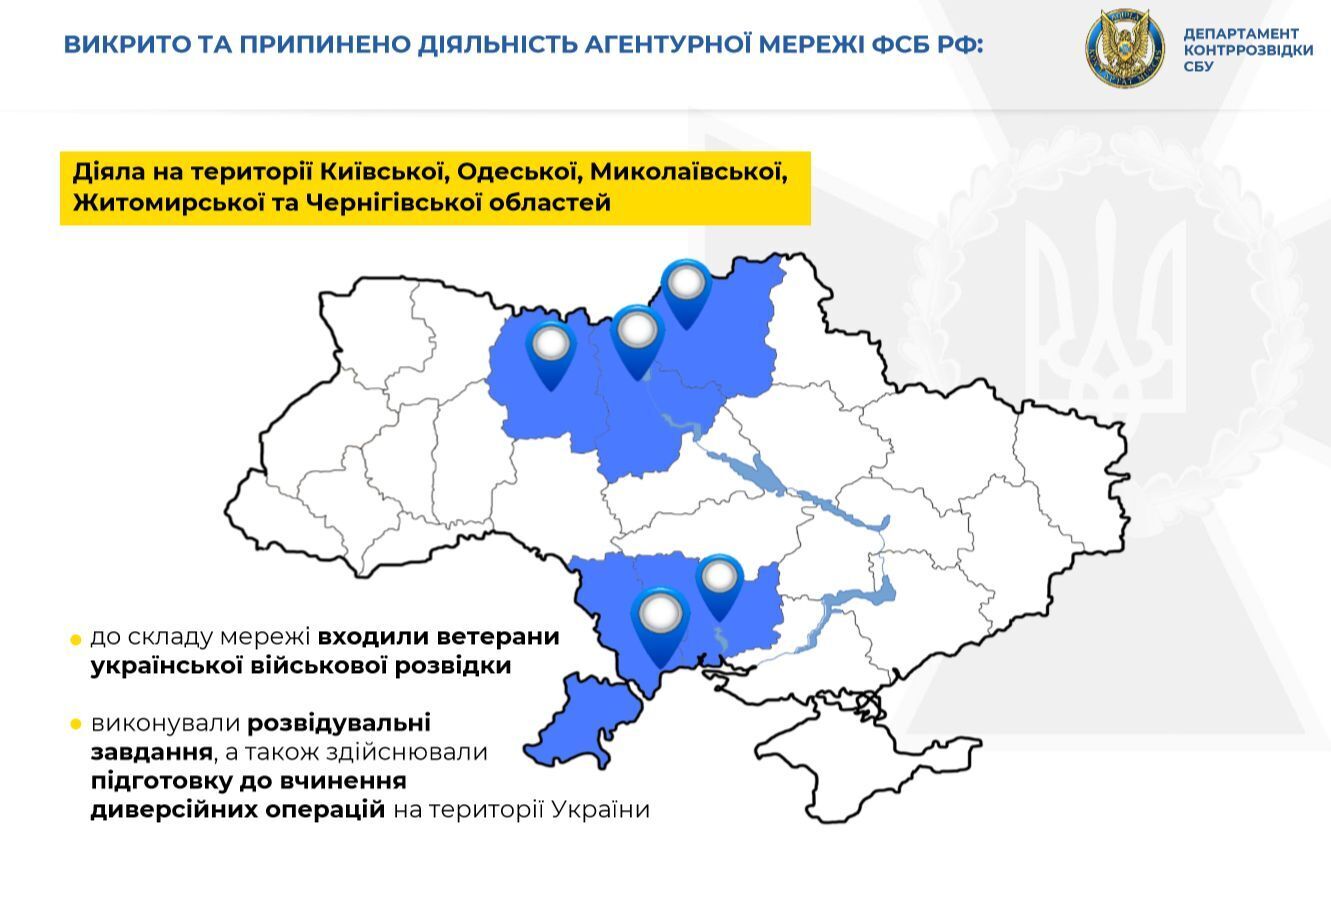 Сеть действовала на территории Киевской, Одесской, Николаевской, Житомирской и Черниговской областей